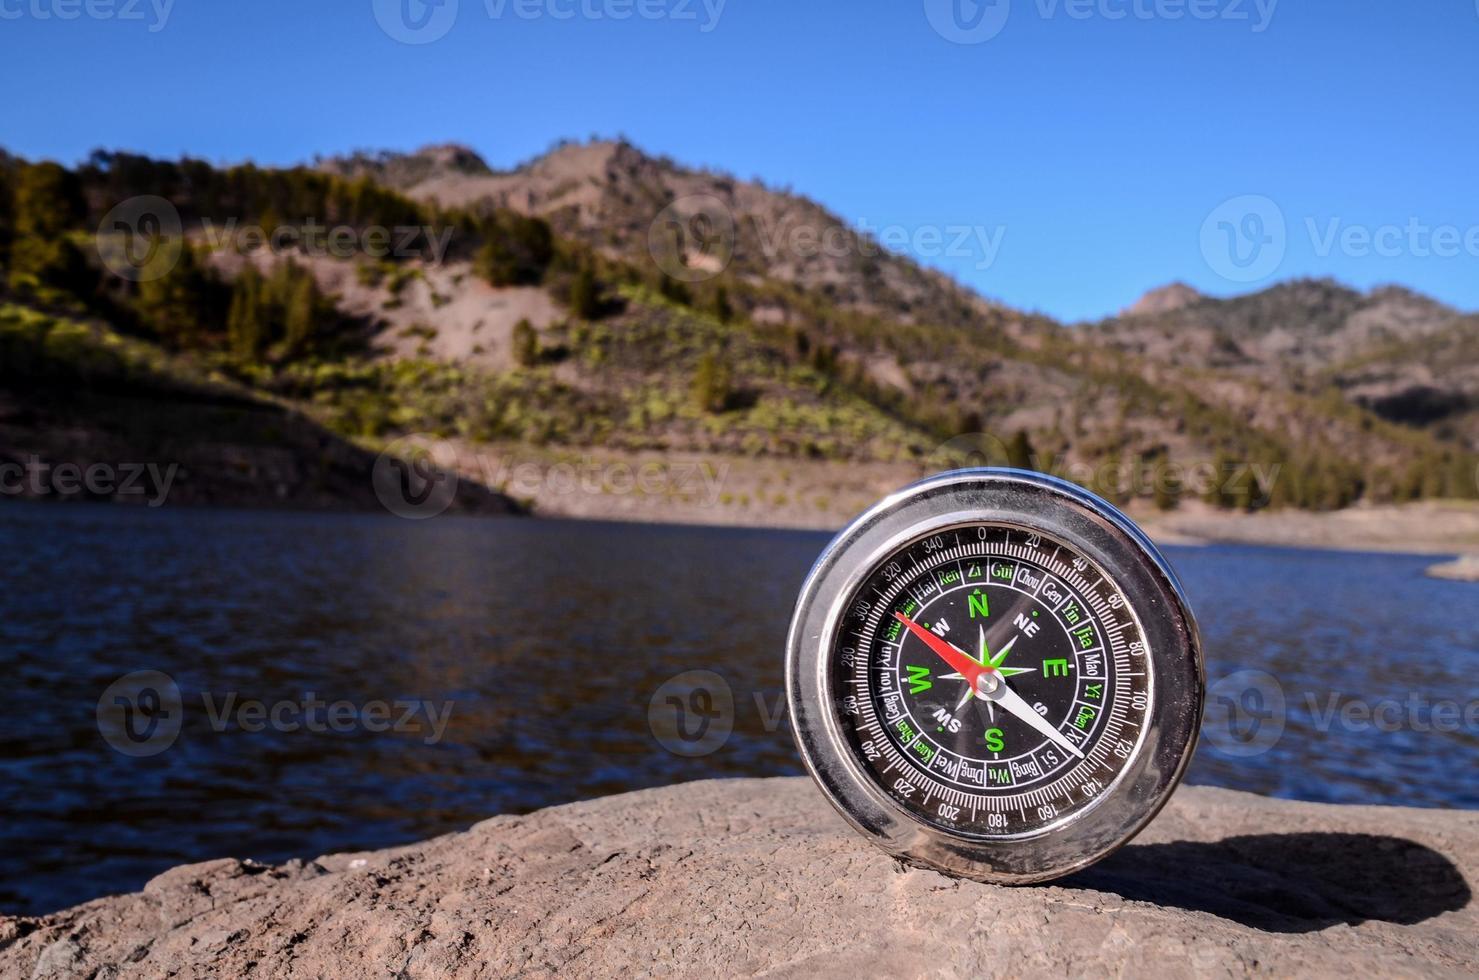 kompass på en sten foto